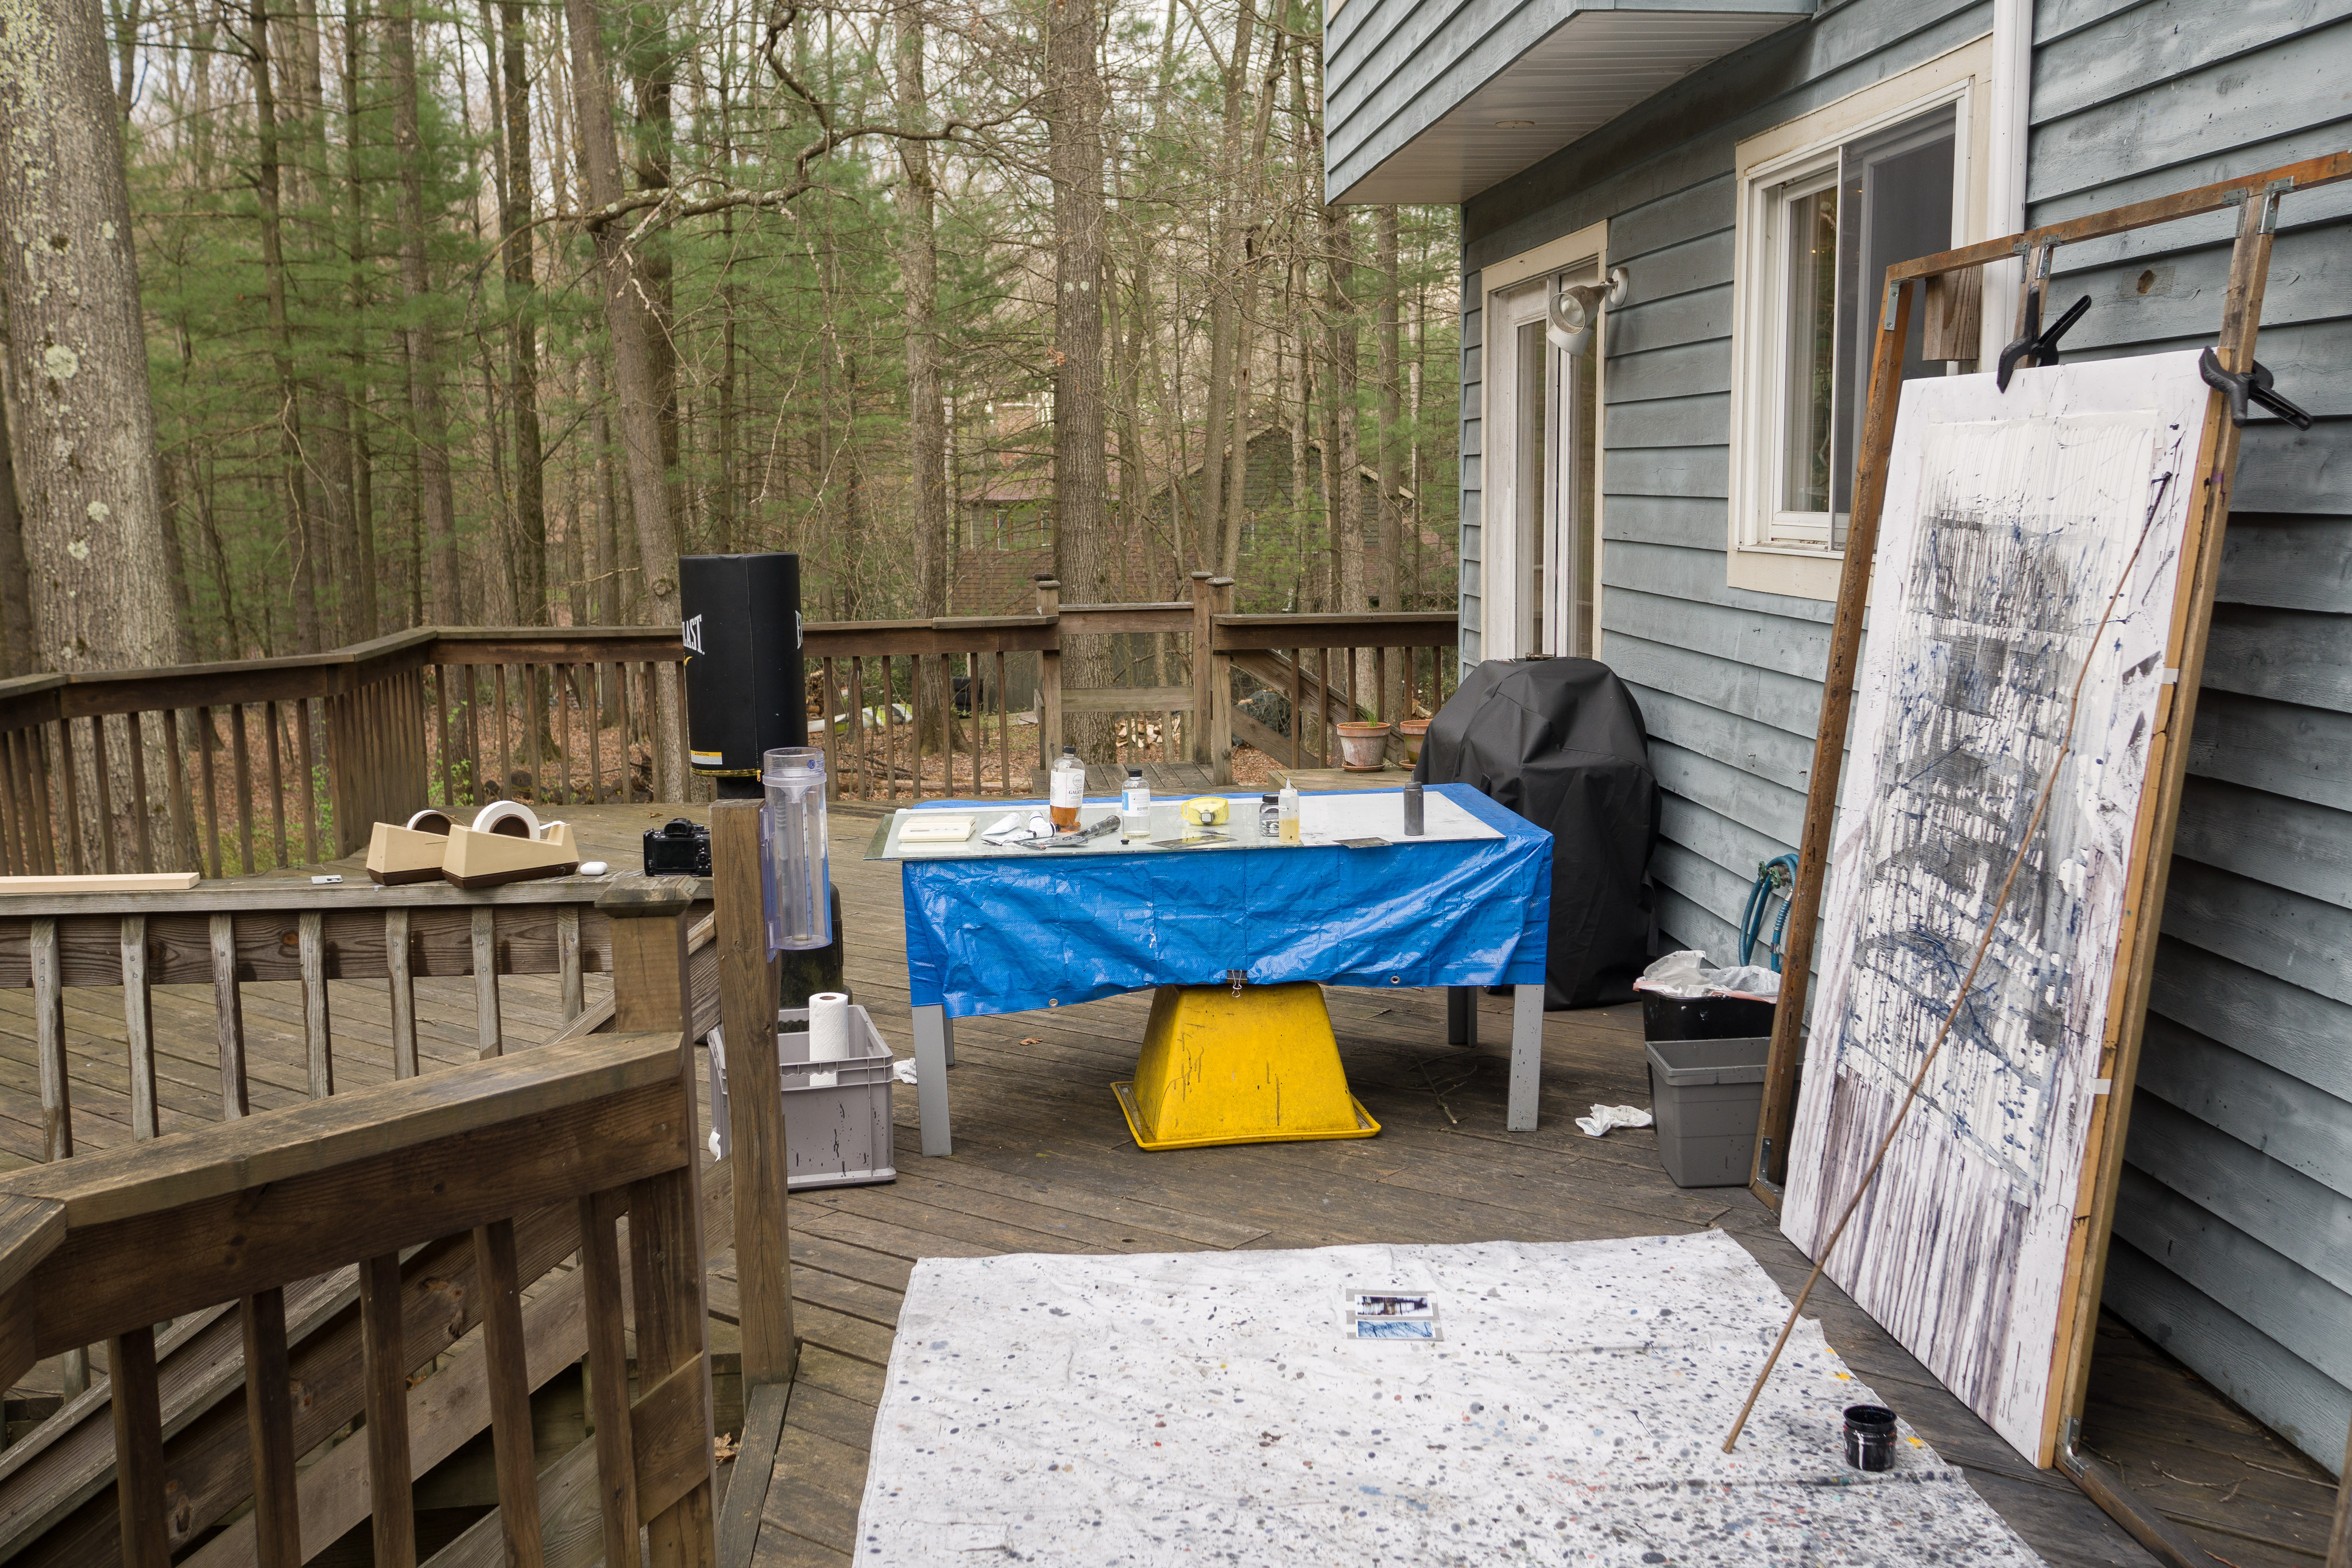 Outdoor studio in April, work in progress.